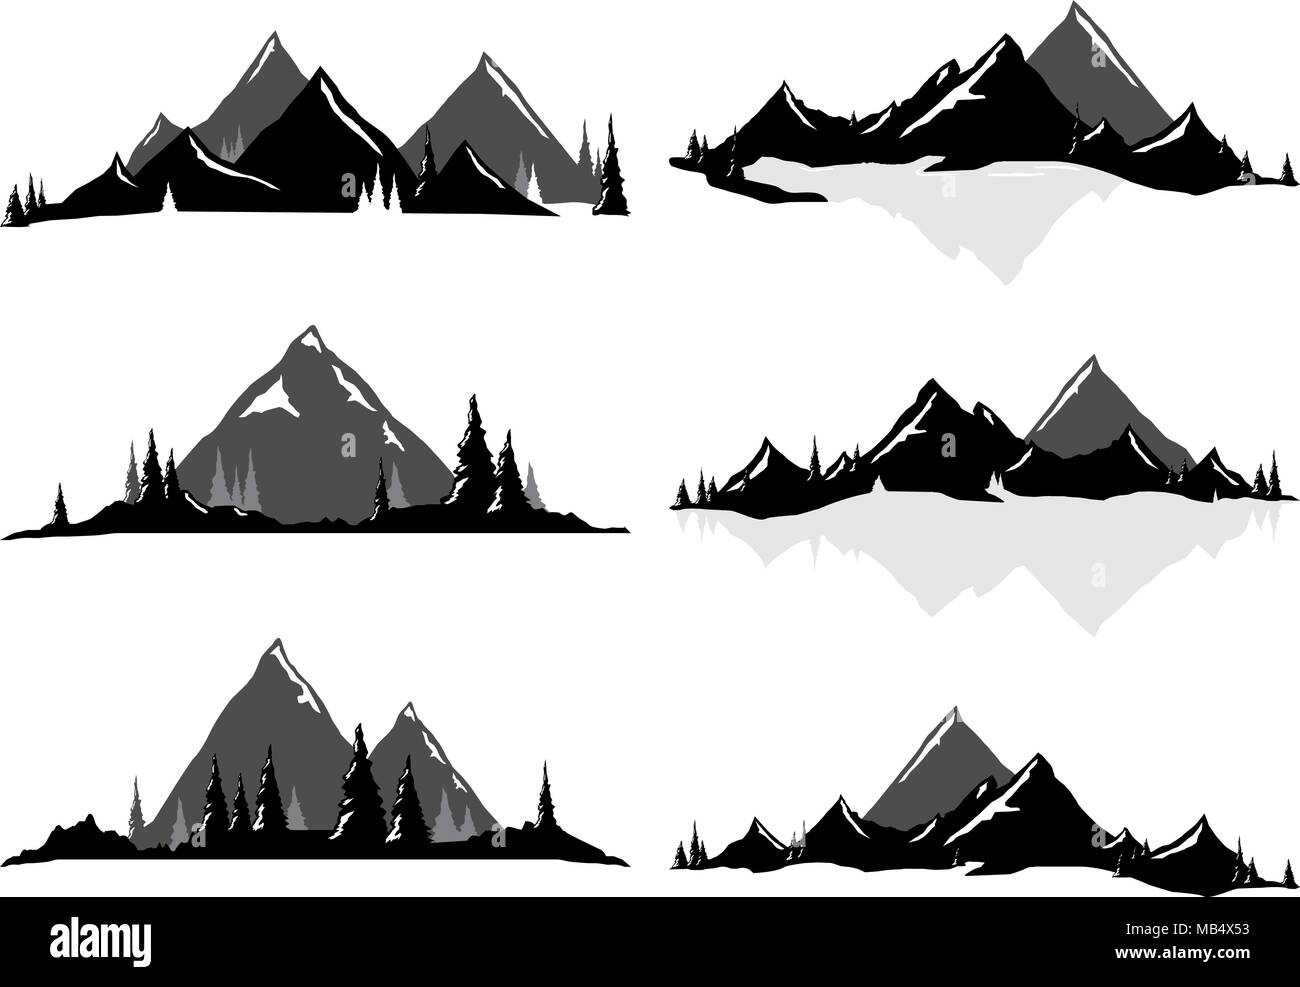 Varie illustrazioni vettoriali di montagne e colline con alberi e acqua. Tutti gli oggetti possono essere raggruppati e facilmente spostato intorno a. Se si desidera spostare o Illustrazione Vettoriale